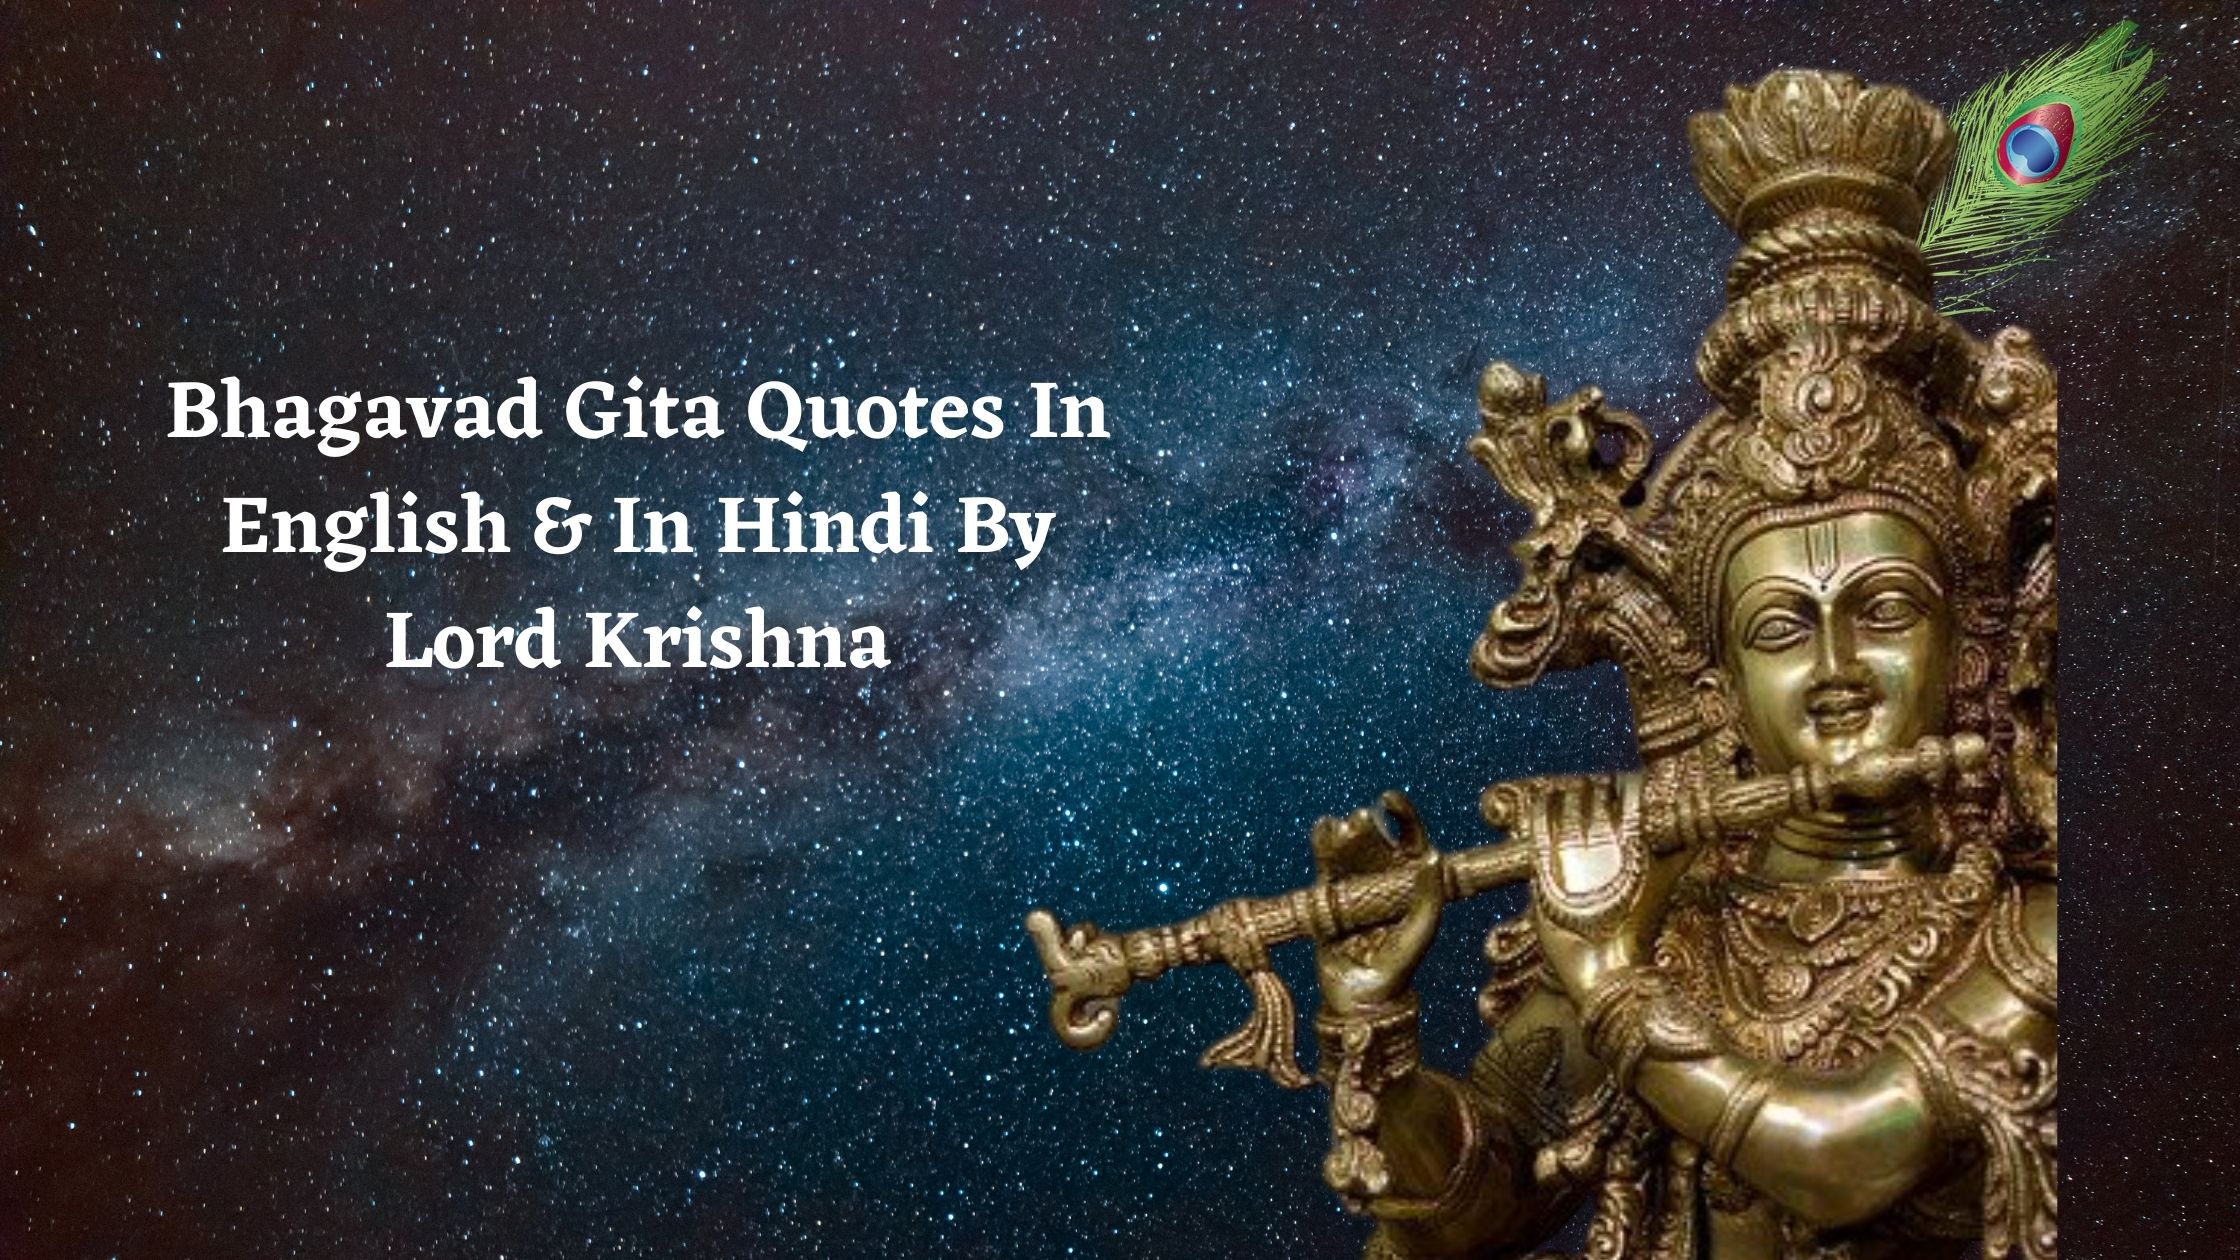 Bhagavad Gita Quotes In English & In Hindi By Lord Krishna